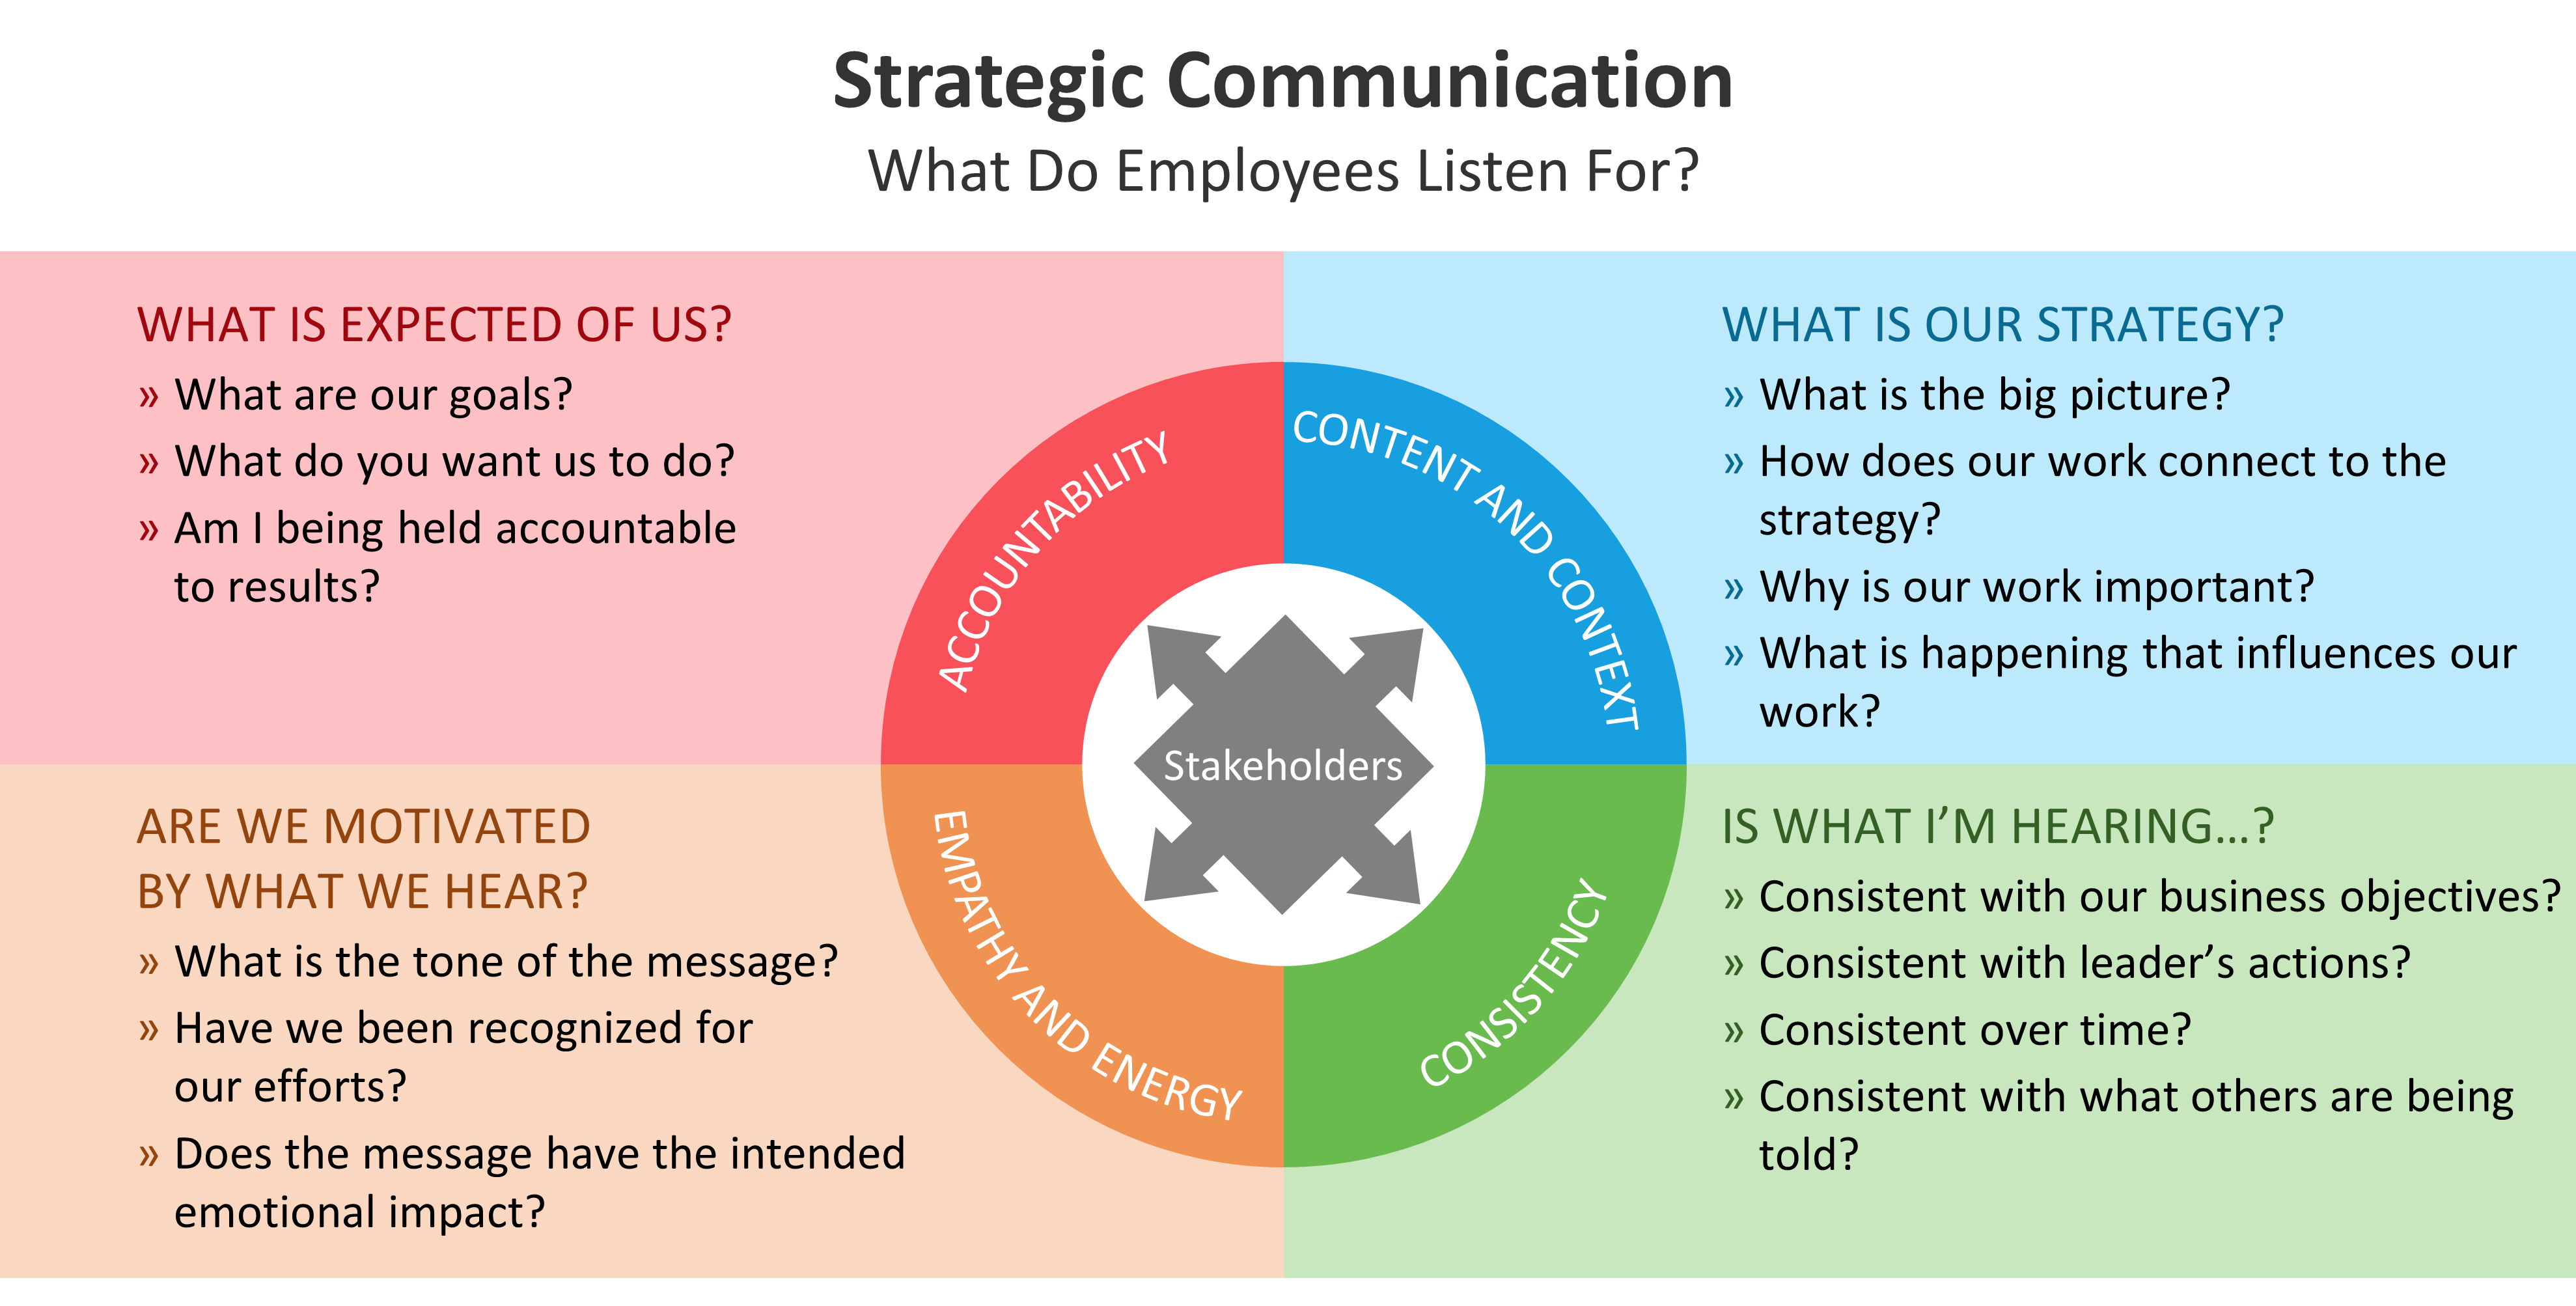 Strategic Communication model Image